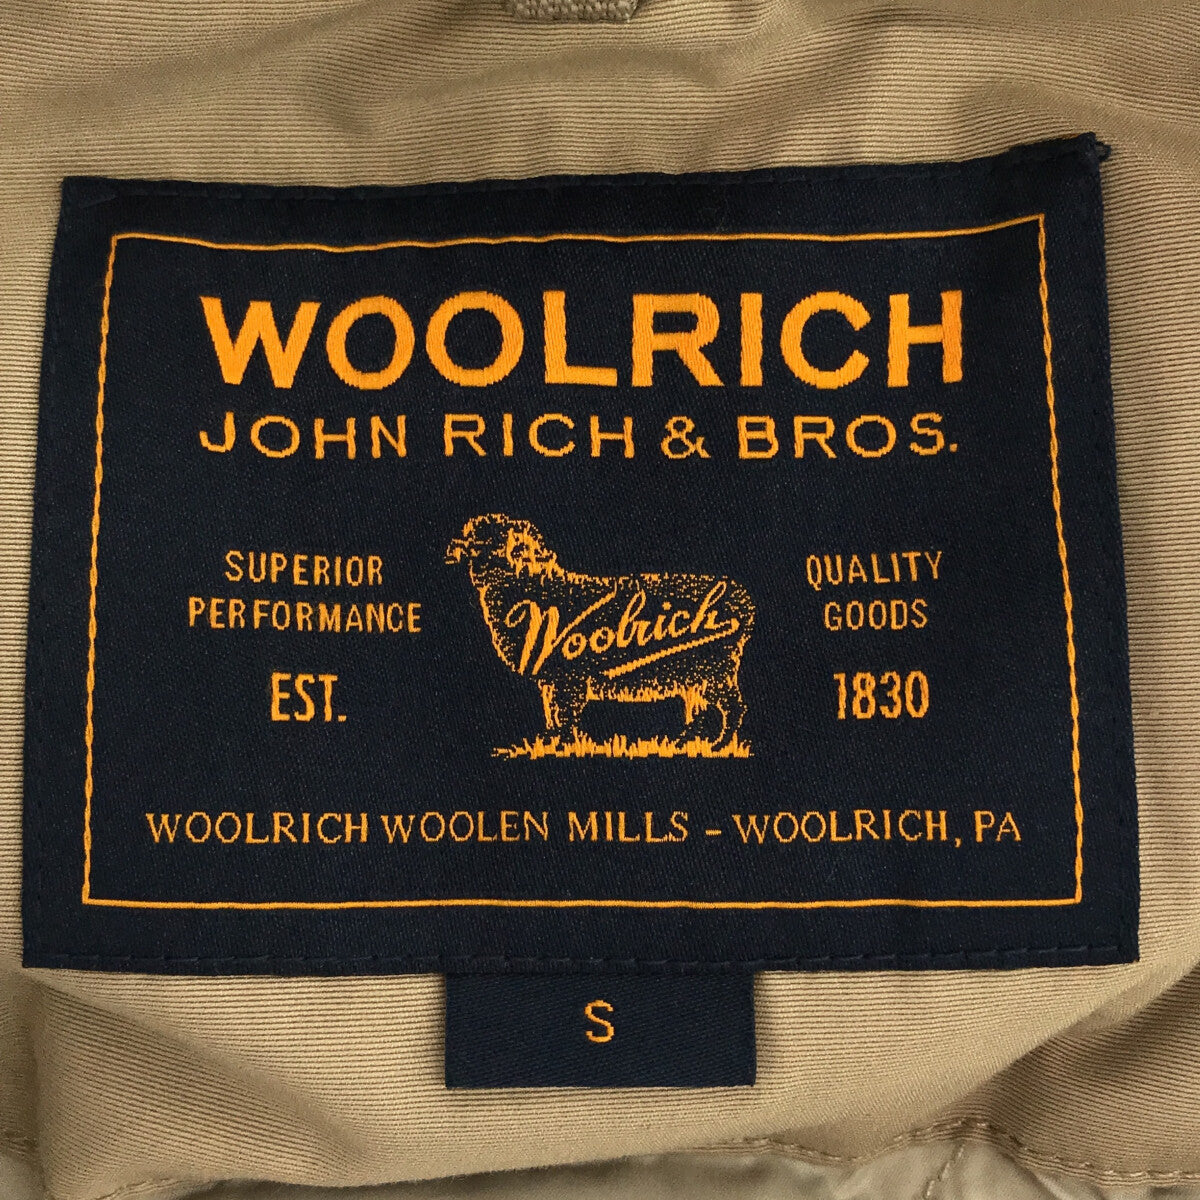 WOOLRICH / ウールリッチ | NEW ARCTIC PARKA 60/40クロス ダウンジャケット | S | レディース